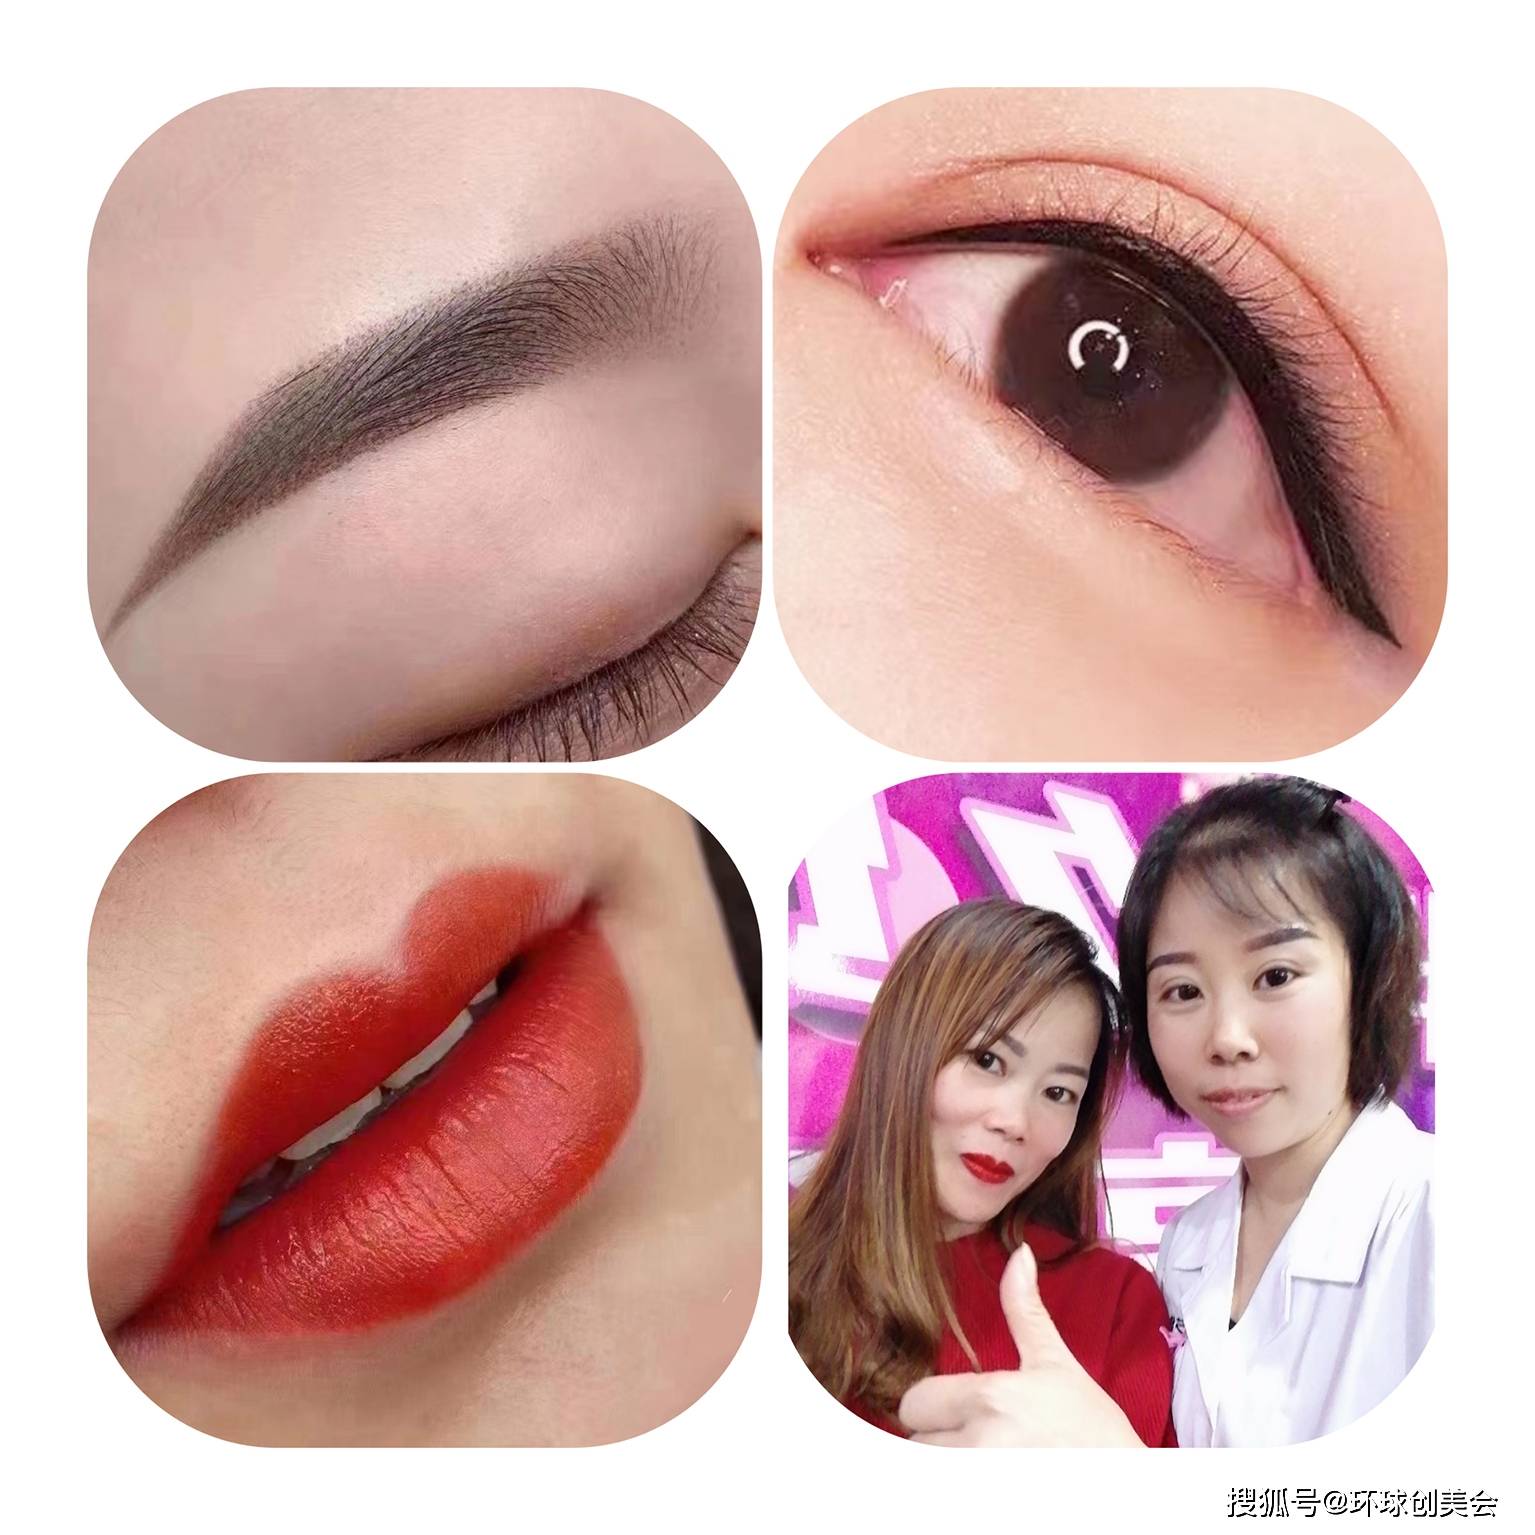 2019年6月在广州本色纹绣培训学校进修半永久眉眼唇纹绣定妆技术